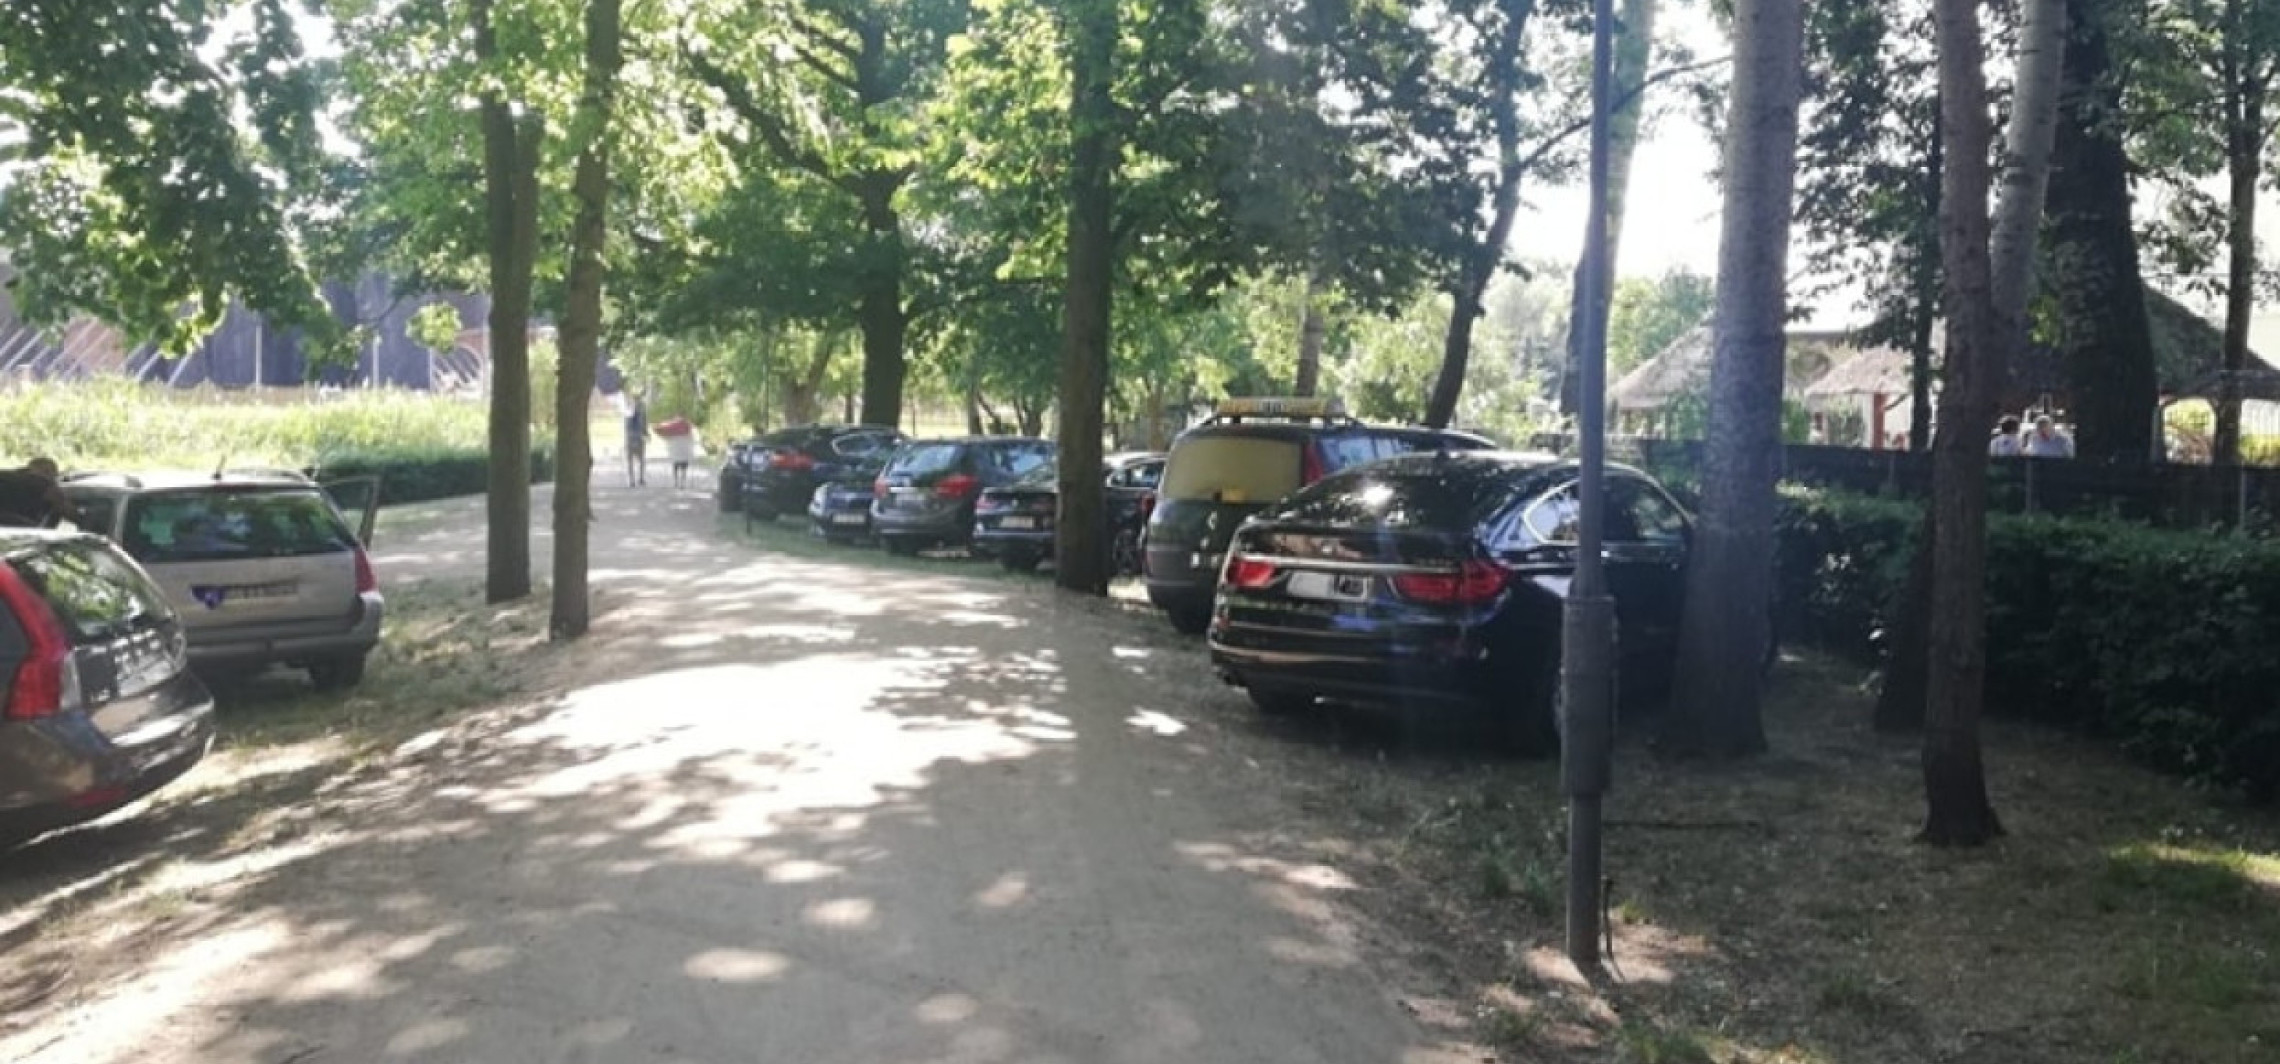 Inowrocław - Pokazali, jak nie należy parkować aut w mieście